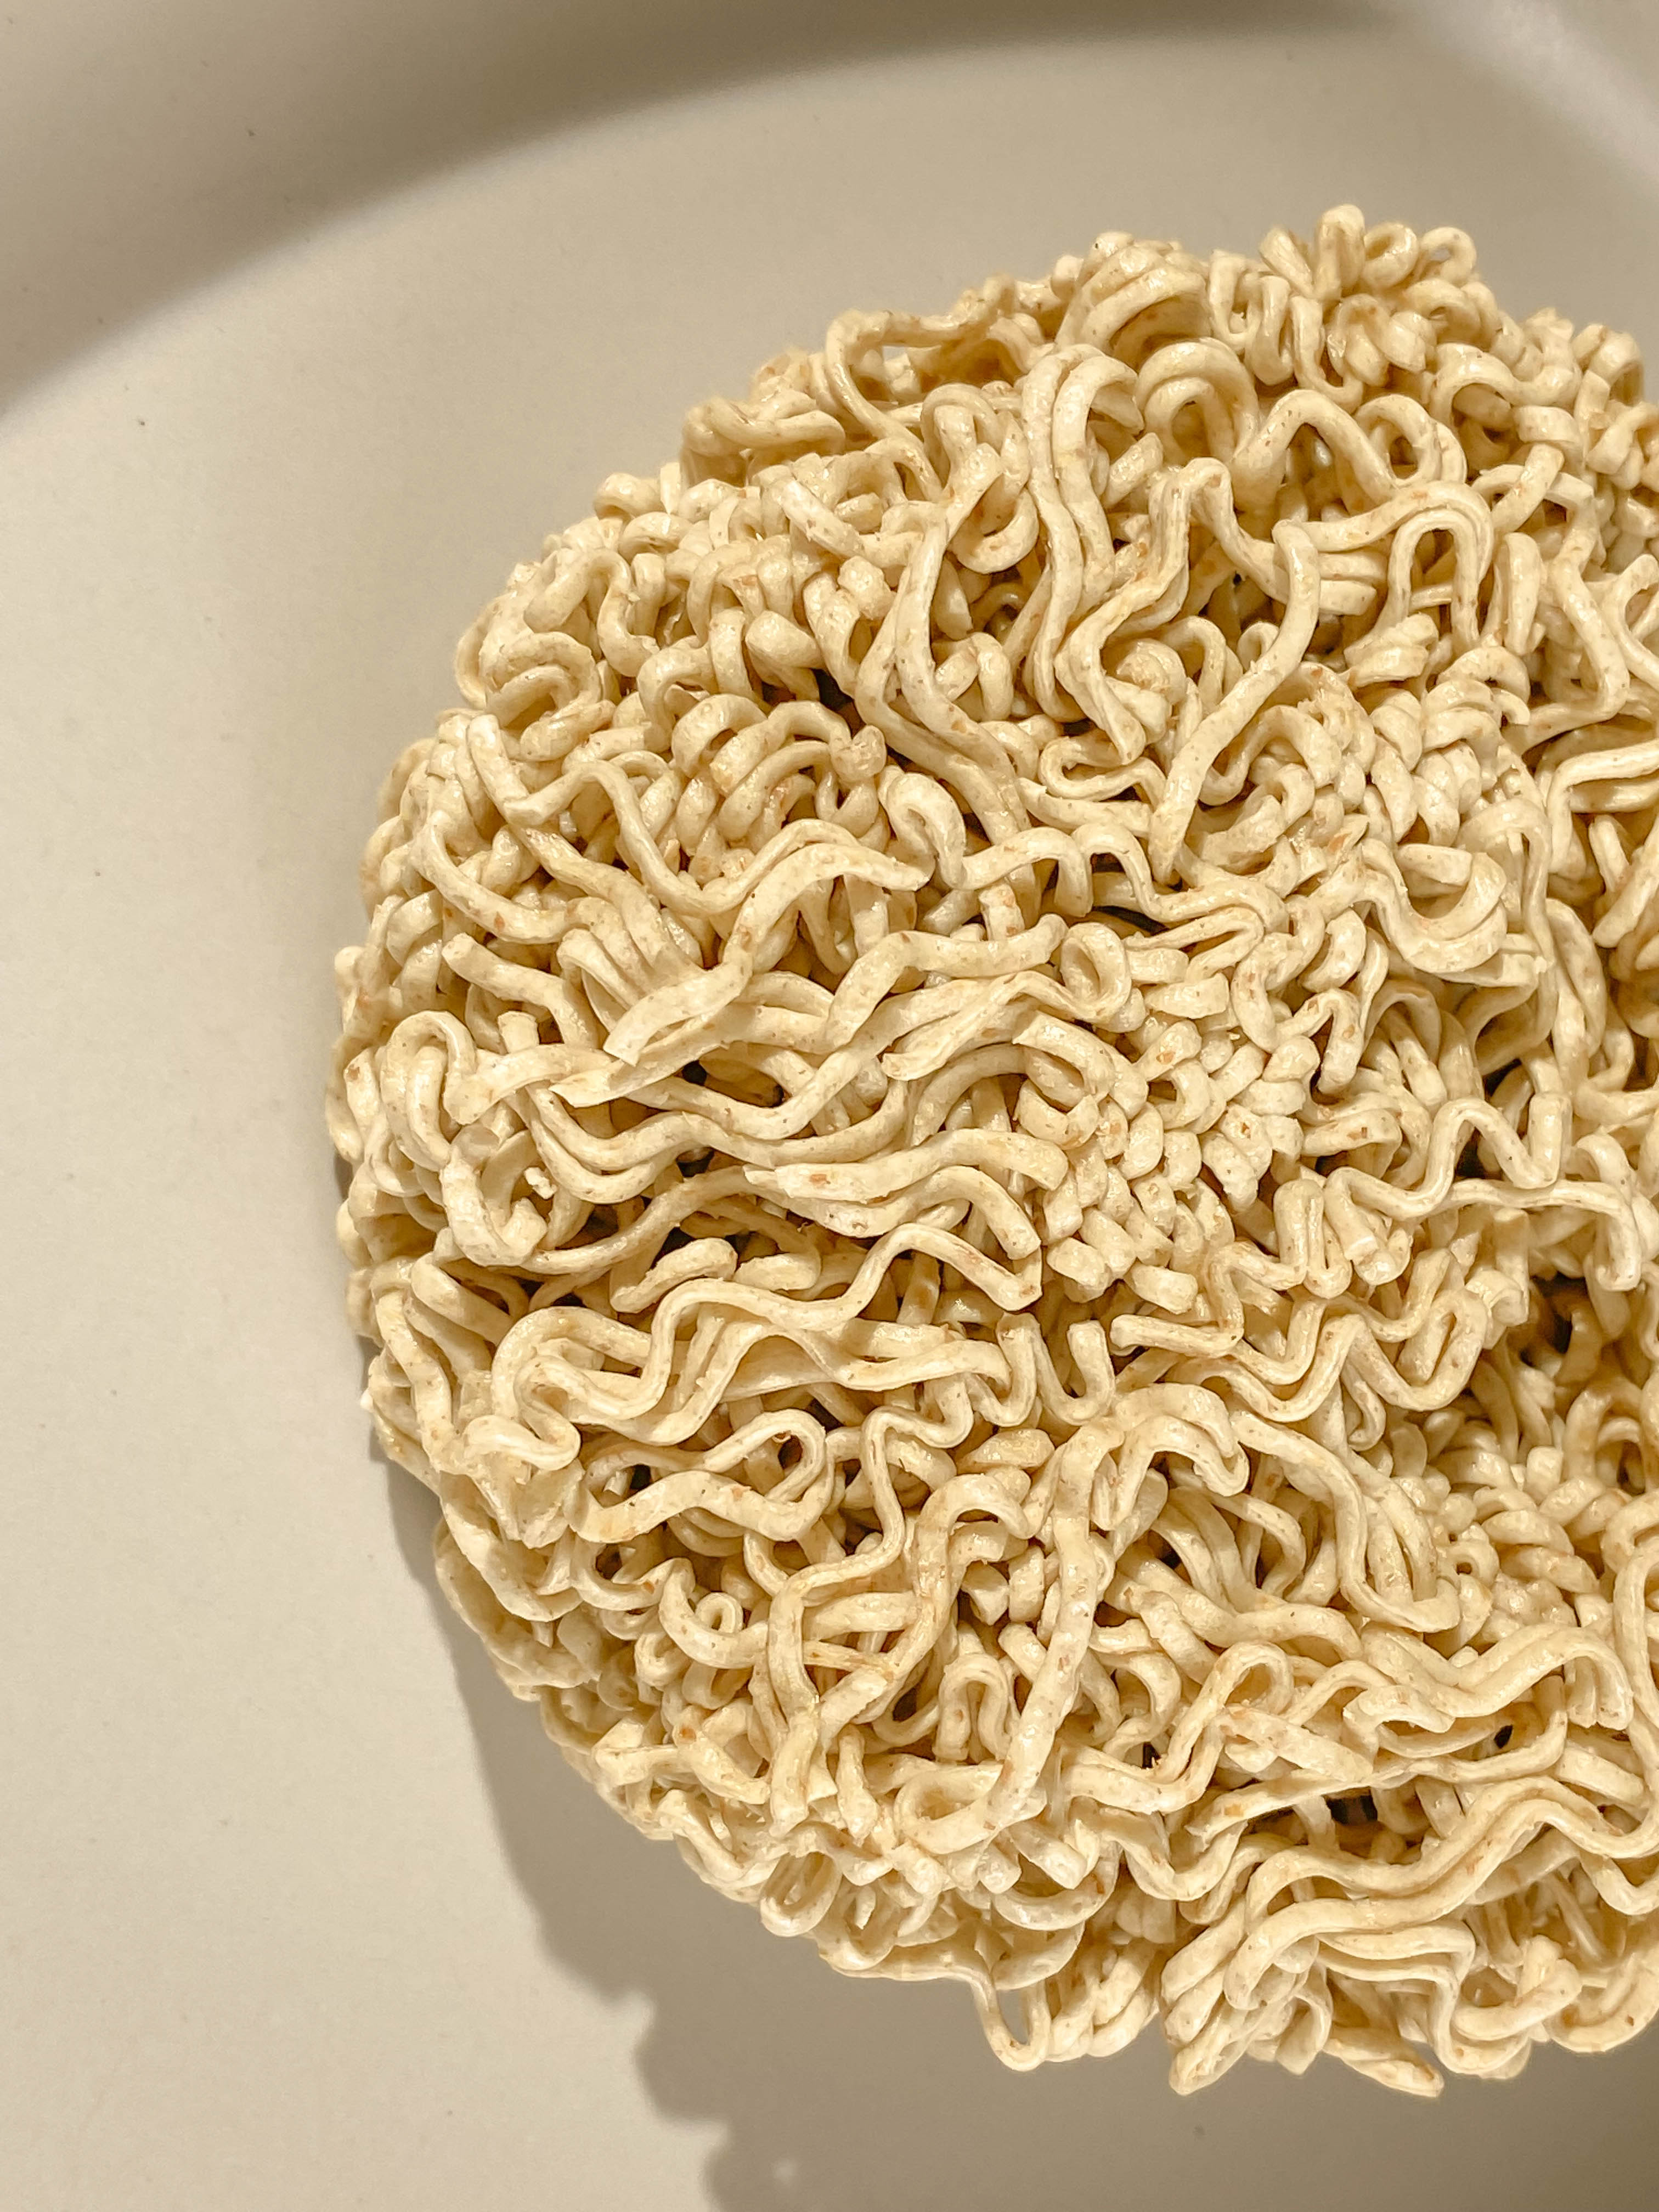 Whole Wheat Instant Noodles